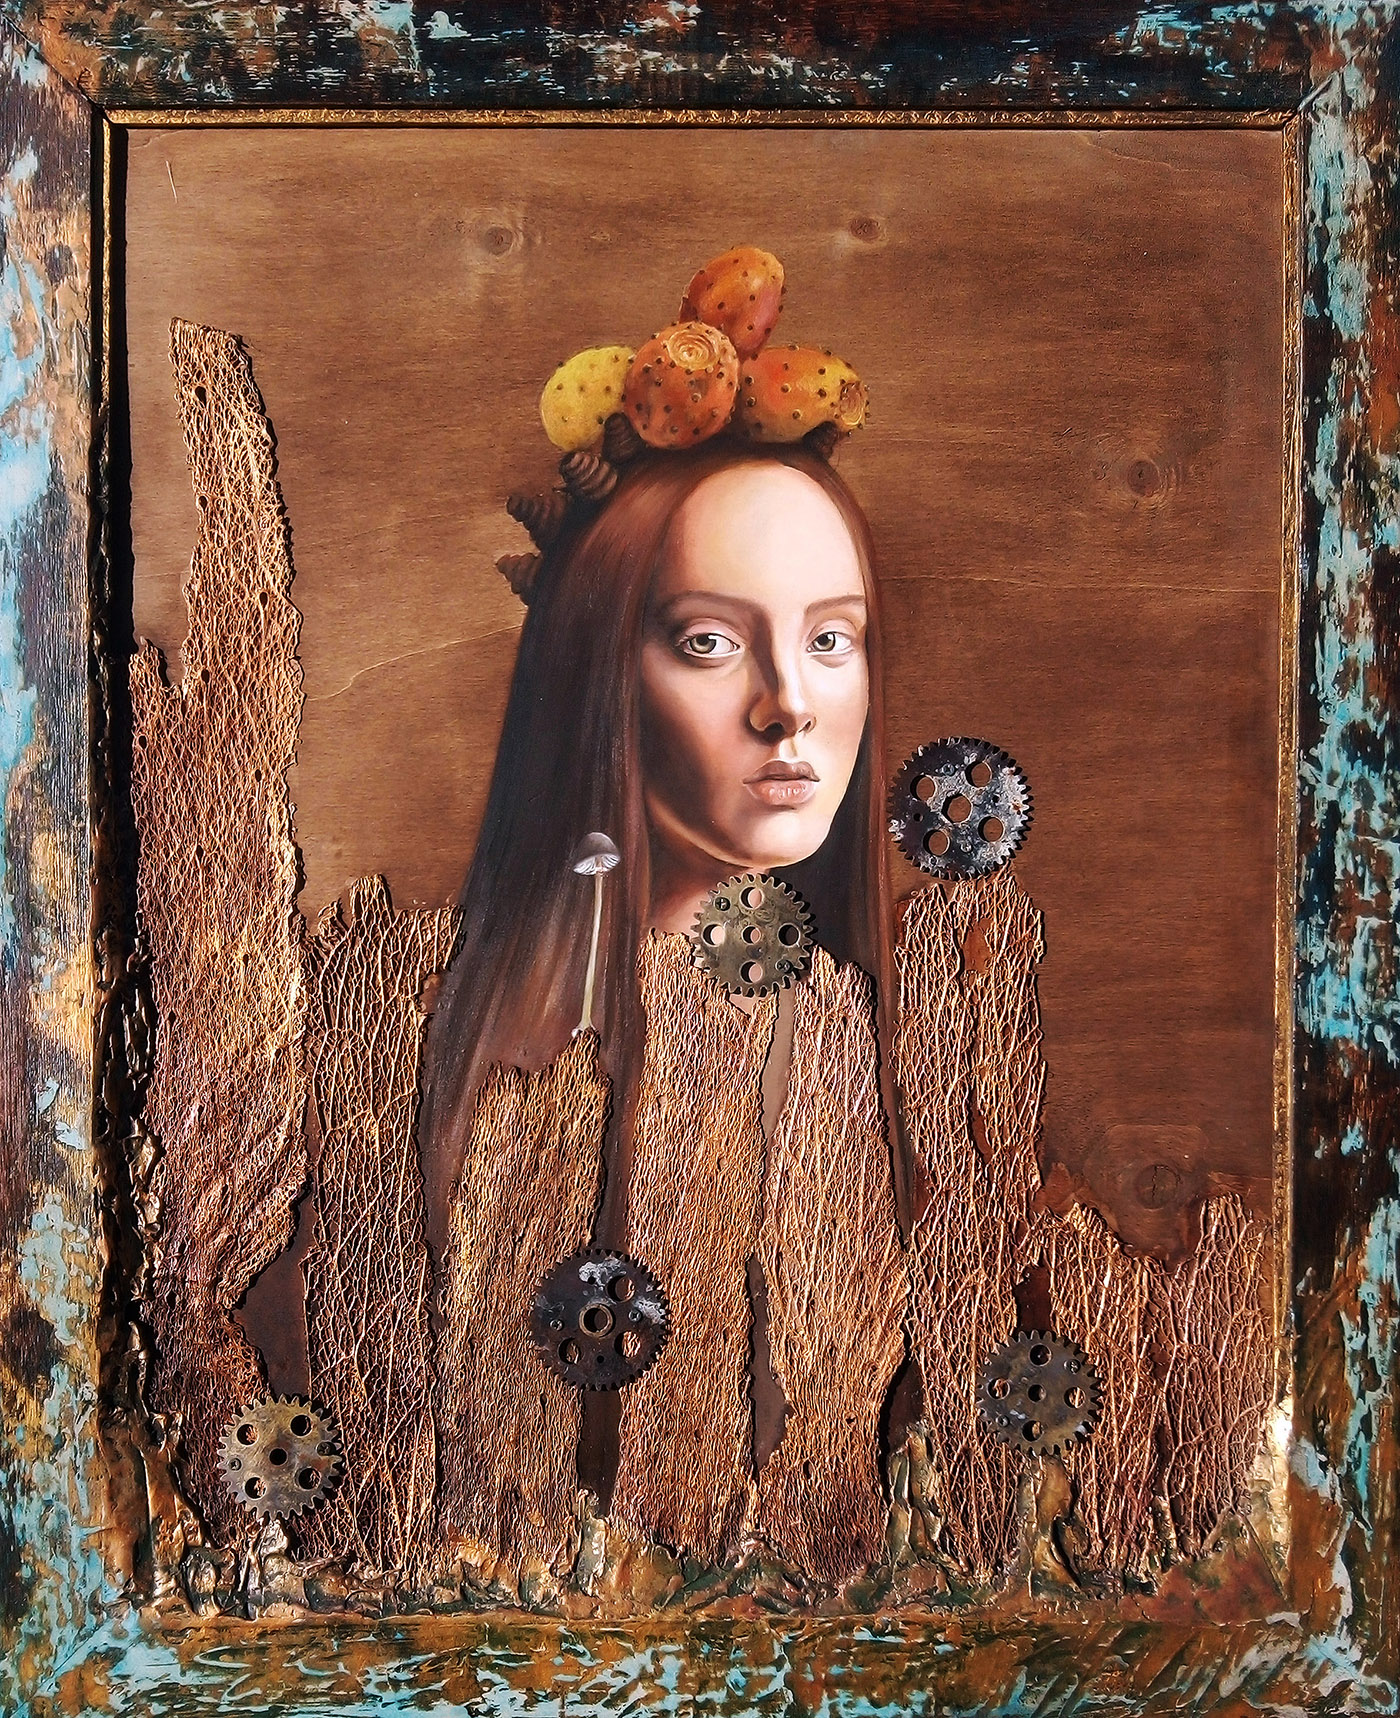 Cláudia Costa – Metáfora, técnica mista sobre madeira, 85 x 70 cm